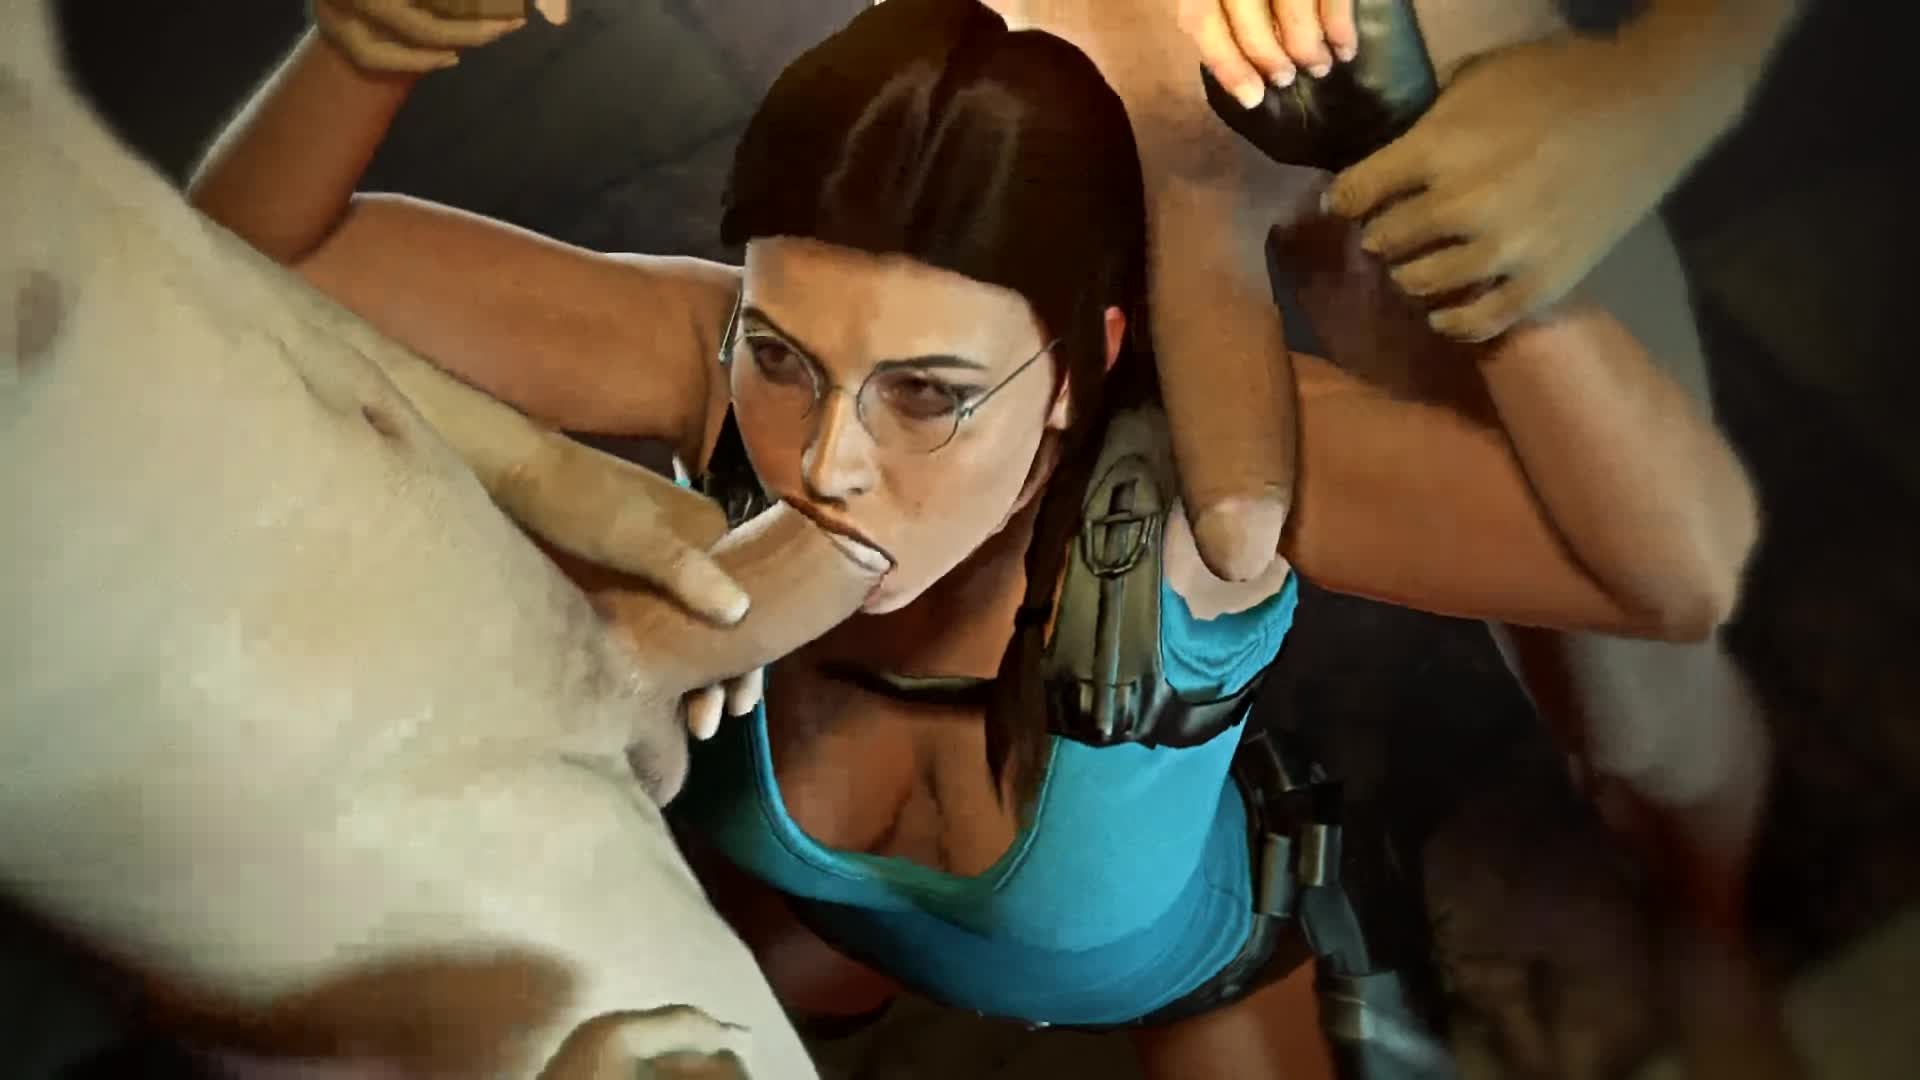 Lara Croft in Tomb Raider have sex